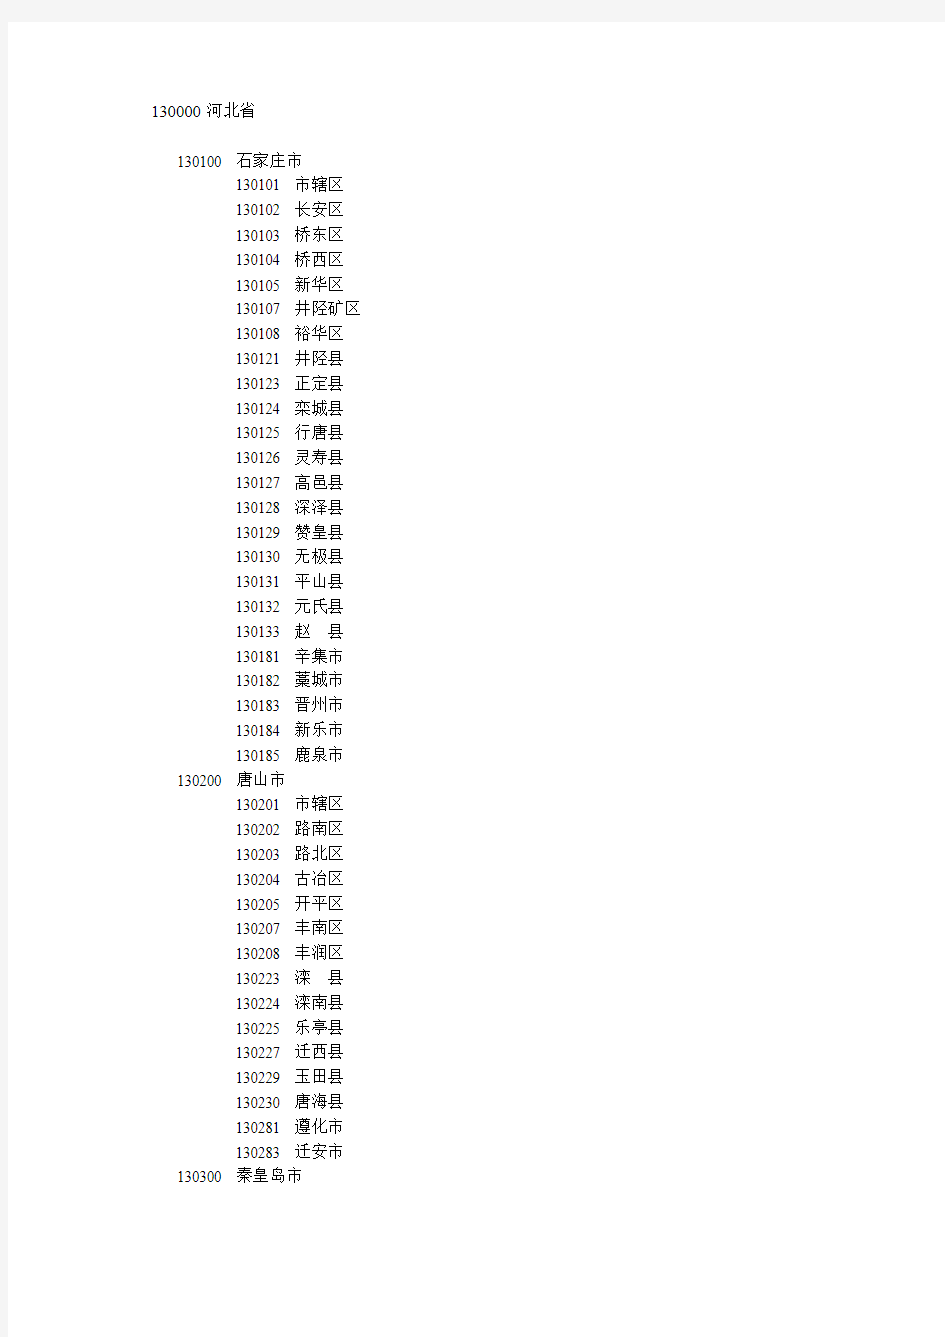 中国2010年最新行政区划,省市县地名列表